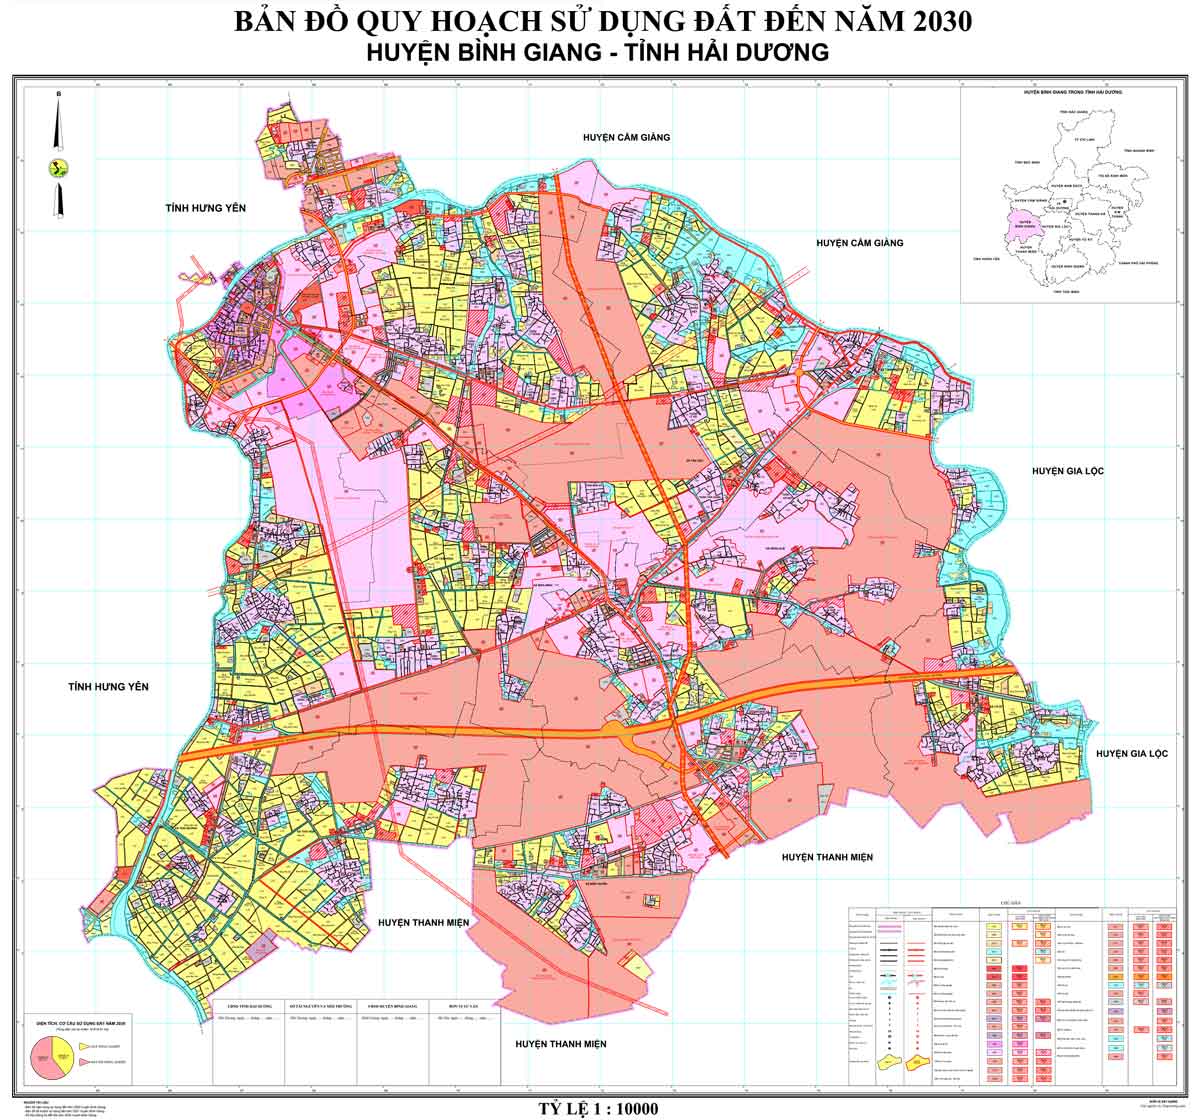 Bản đồ QHSDĐ huyện Bình Giang đến năm 2030